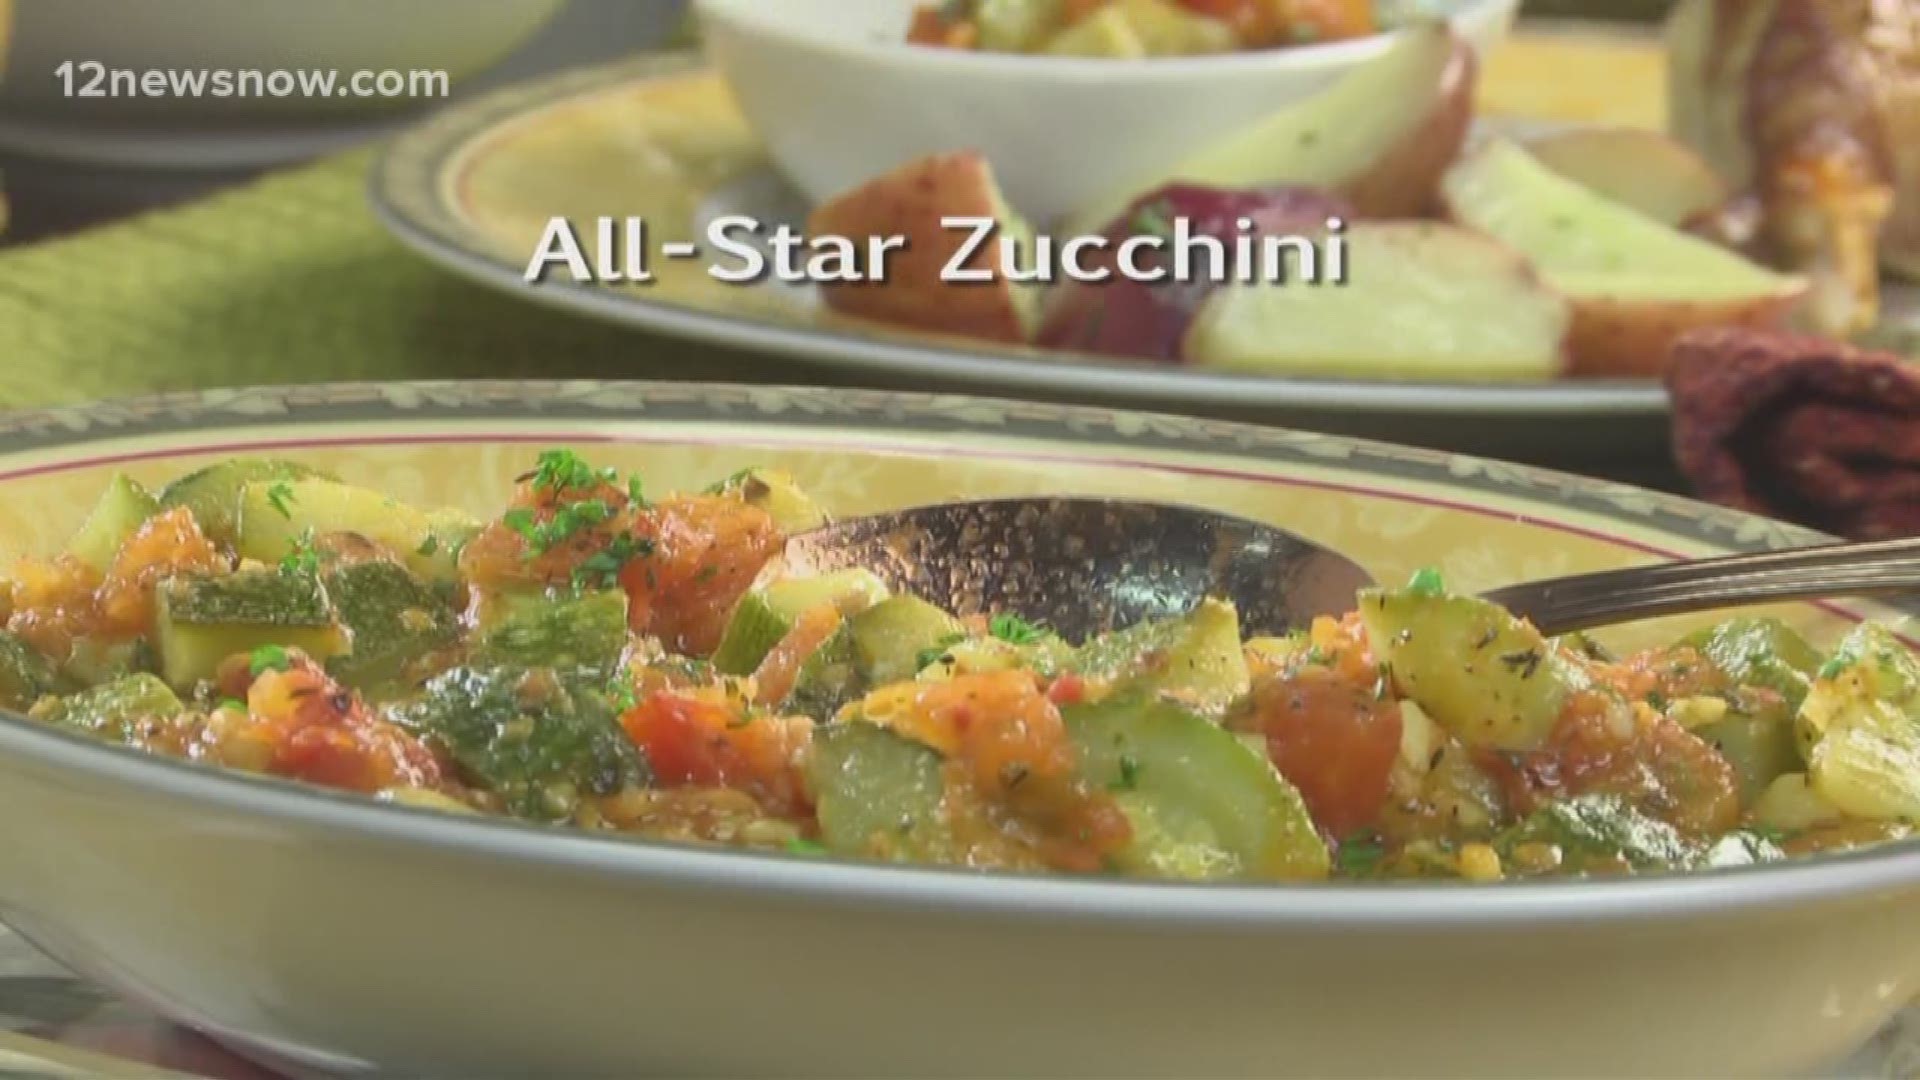 Mr. Food makes 'All-Star Zucchini'